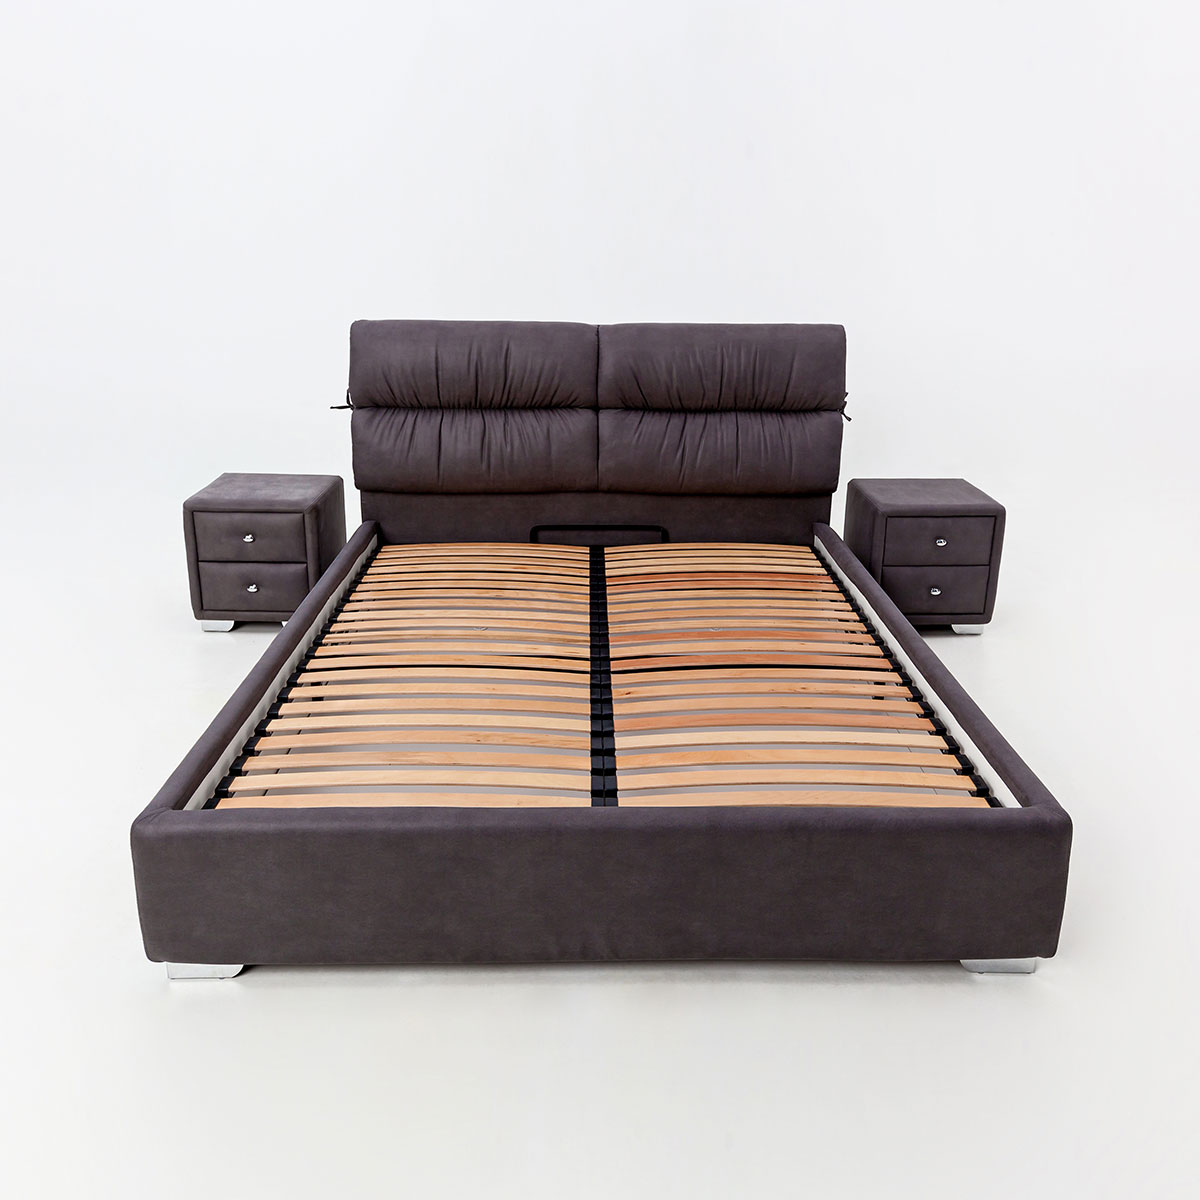 Двуспальная кровать "Манчестер" без подьемного механизма 180х200